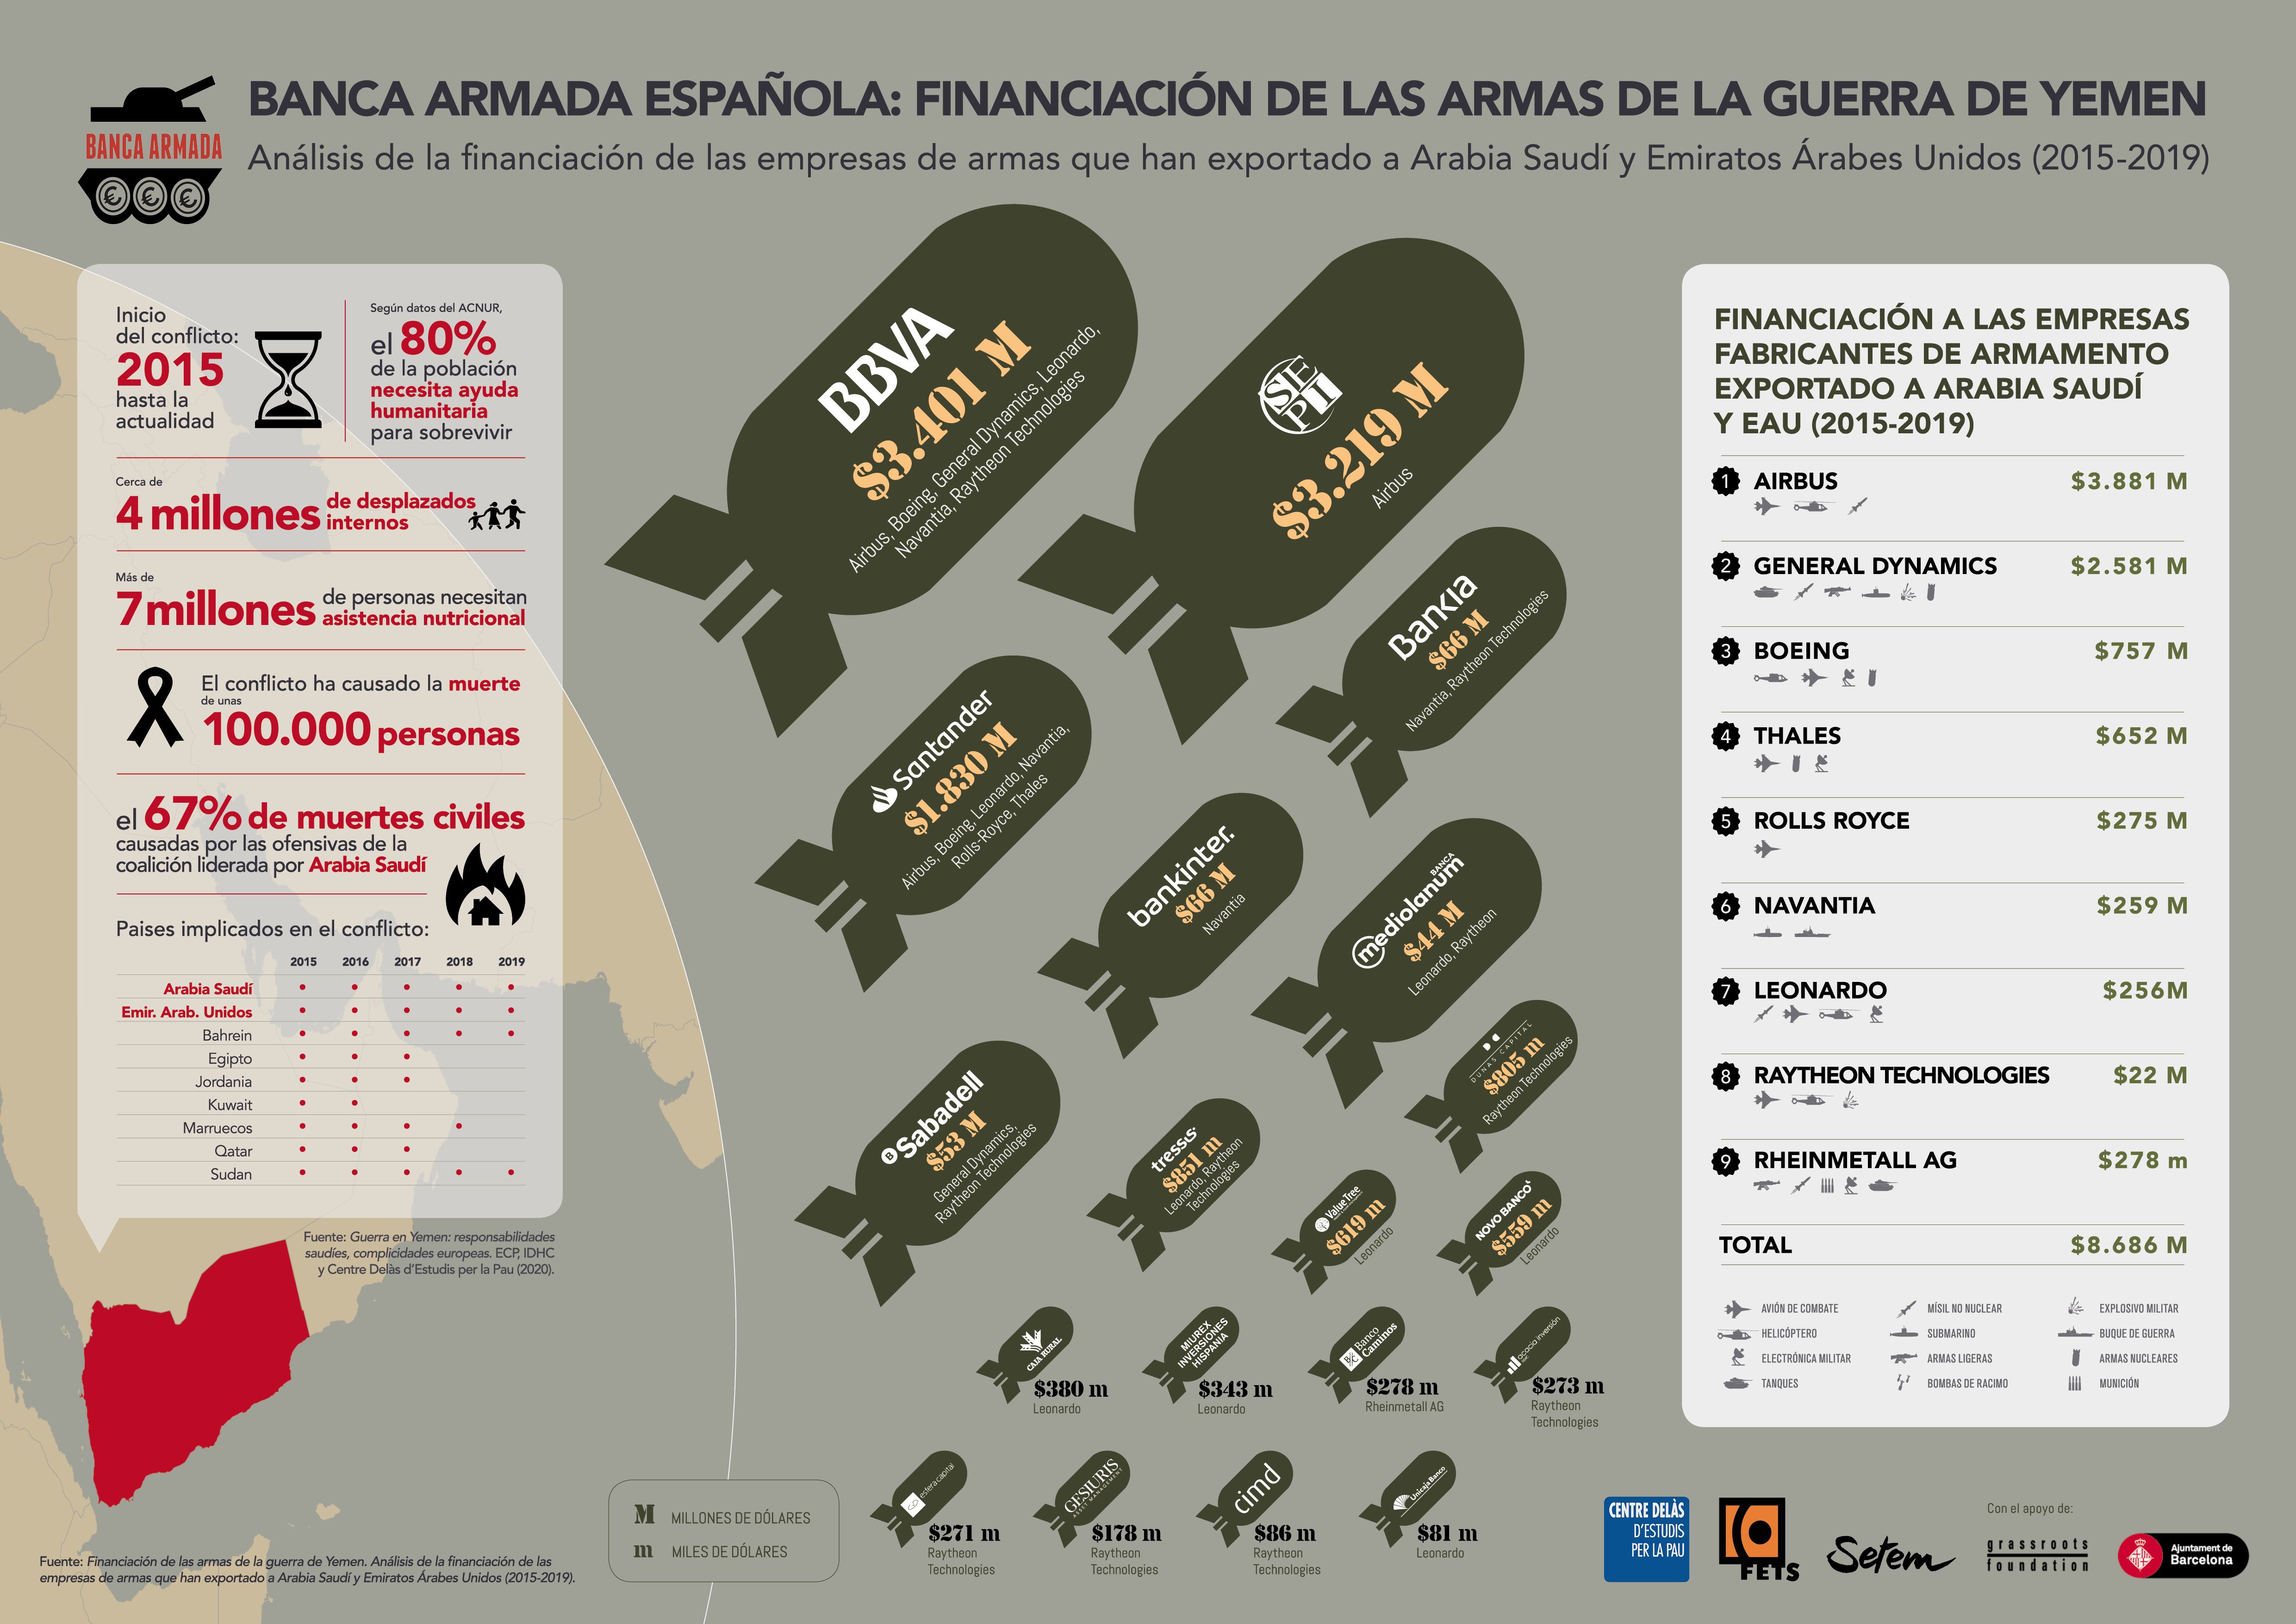 Infografia sobre la Banca Armada Española en la financiación de las armas en la Guerra de Yemen